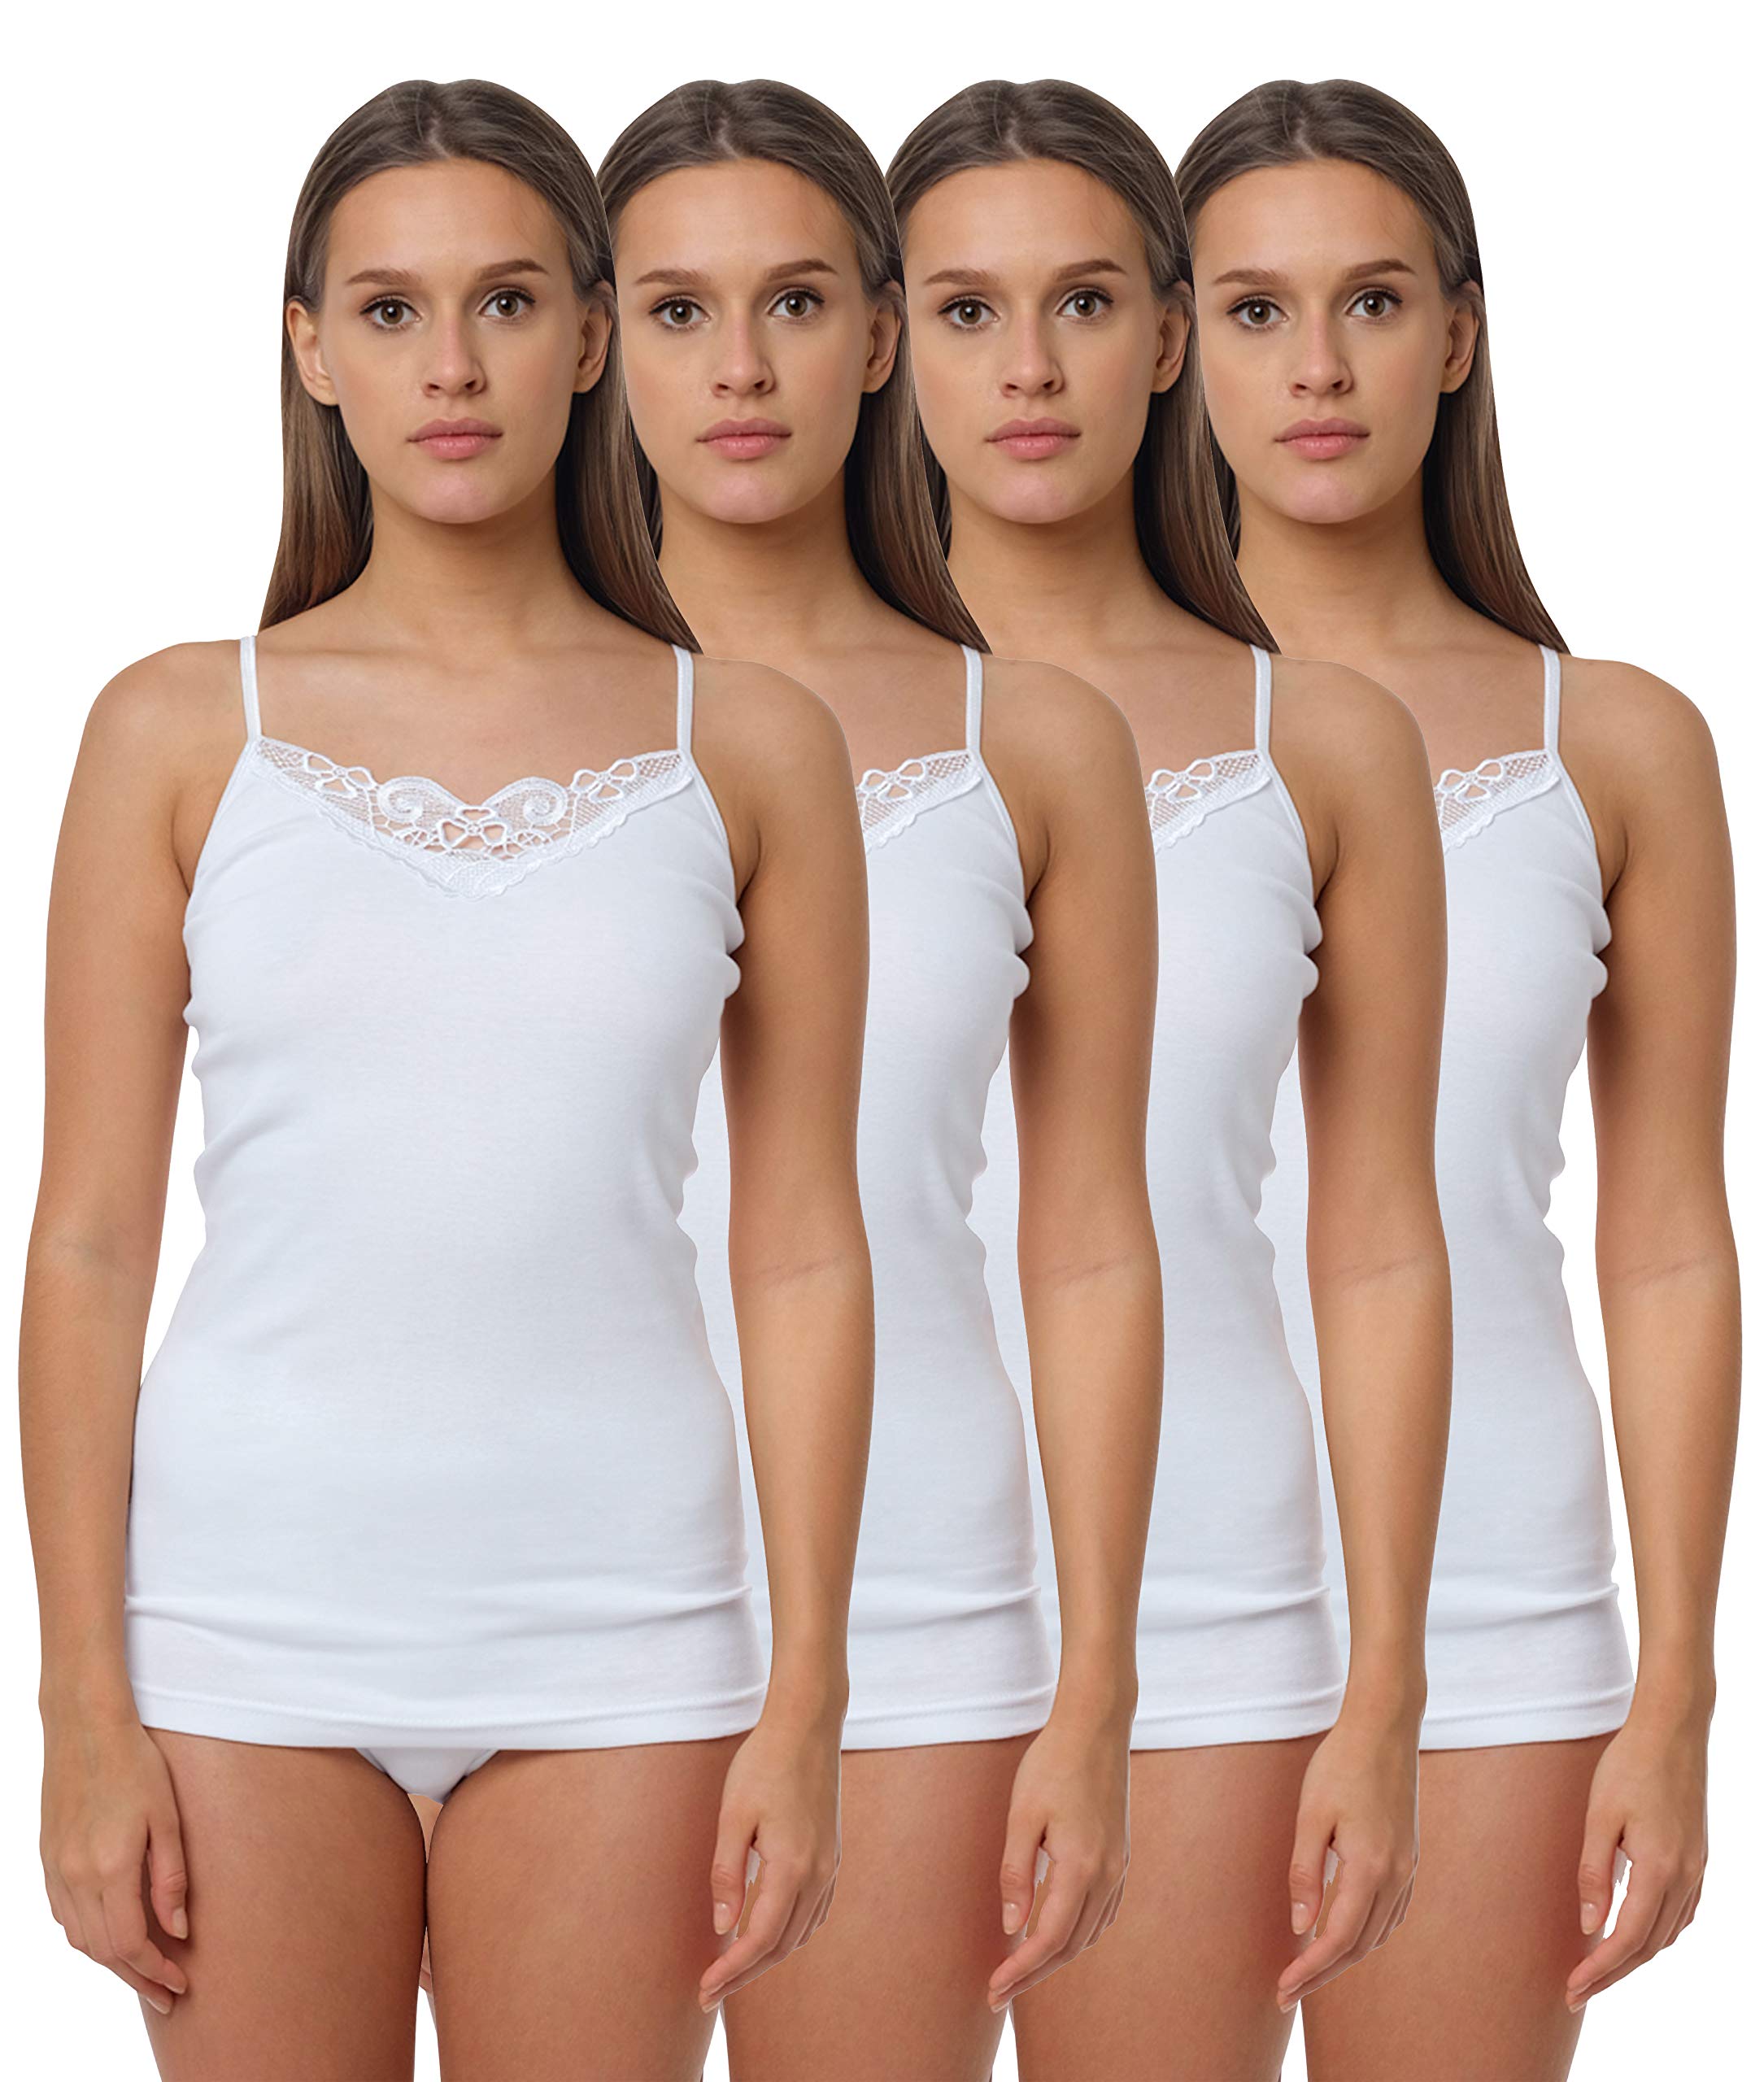 Yenita® 4er Pack Damen Unterhemd mit Spitzeneinsatz, 100% Baumwolle, Gr. 52-54